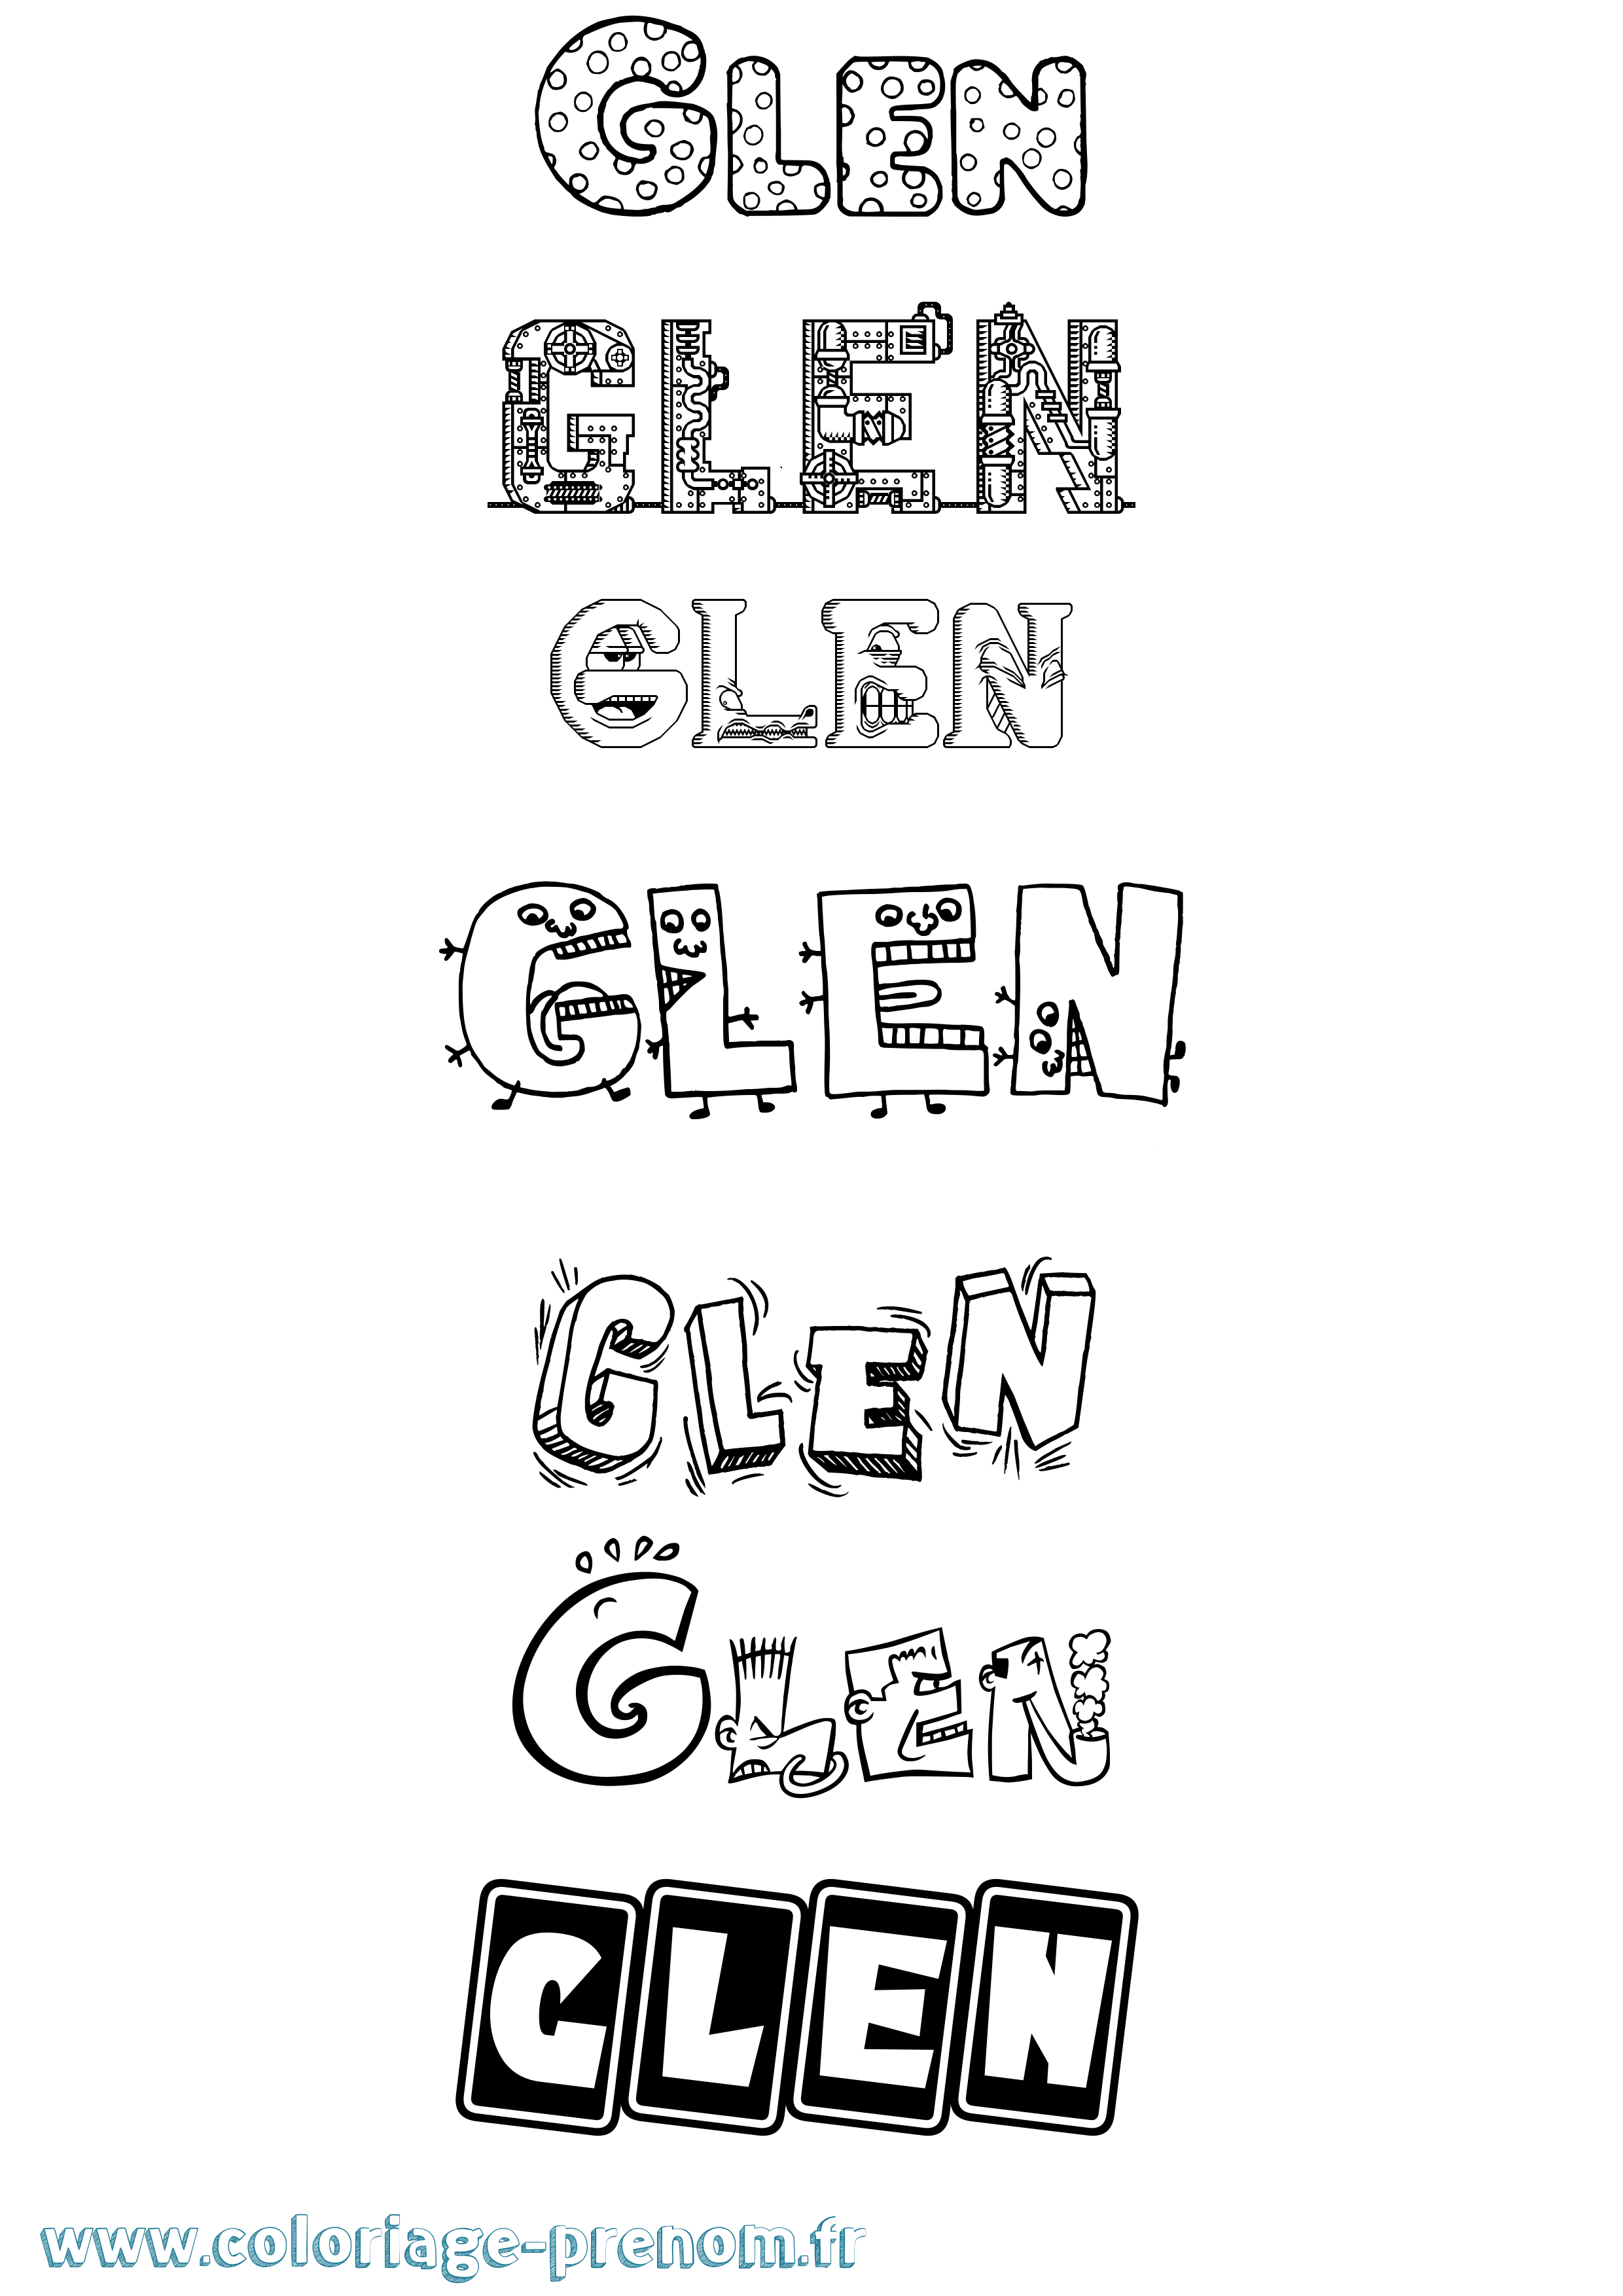 Coloriage prénom Glen Fun